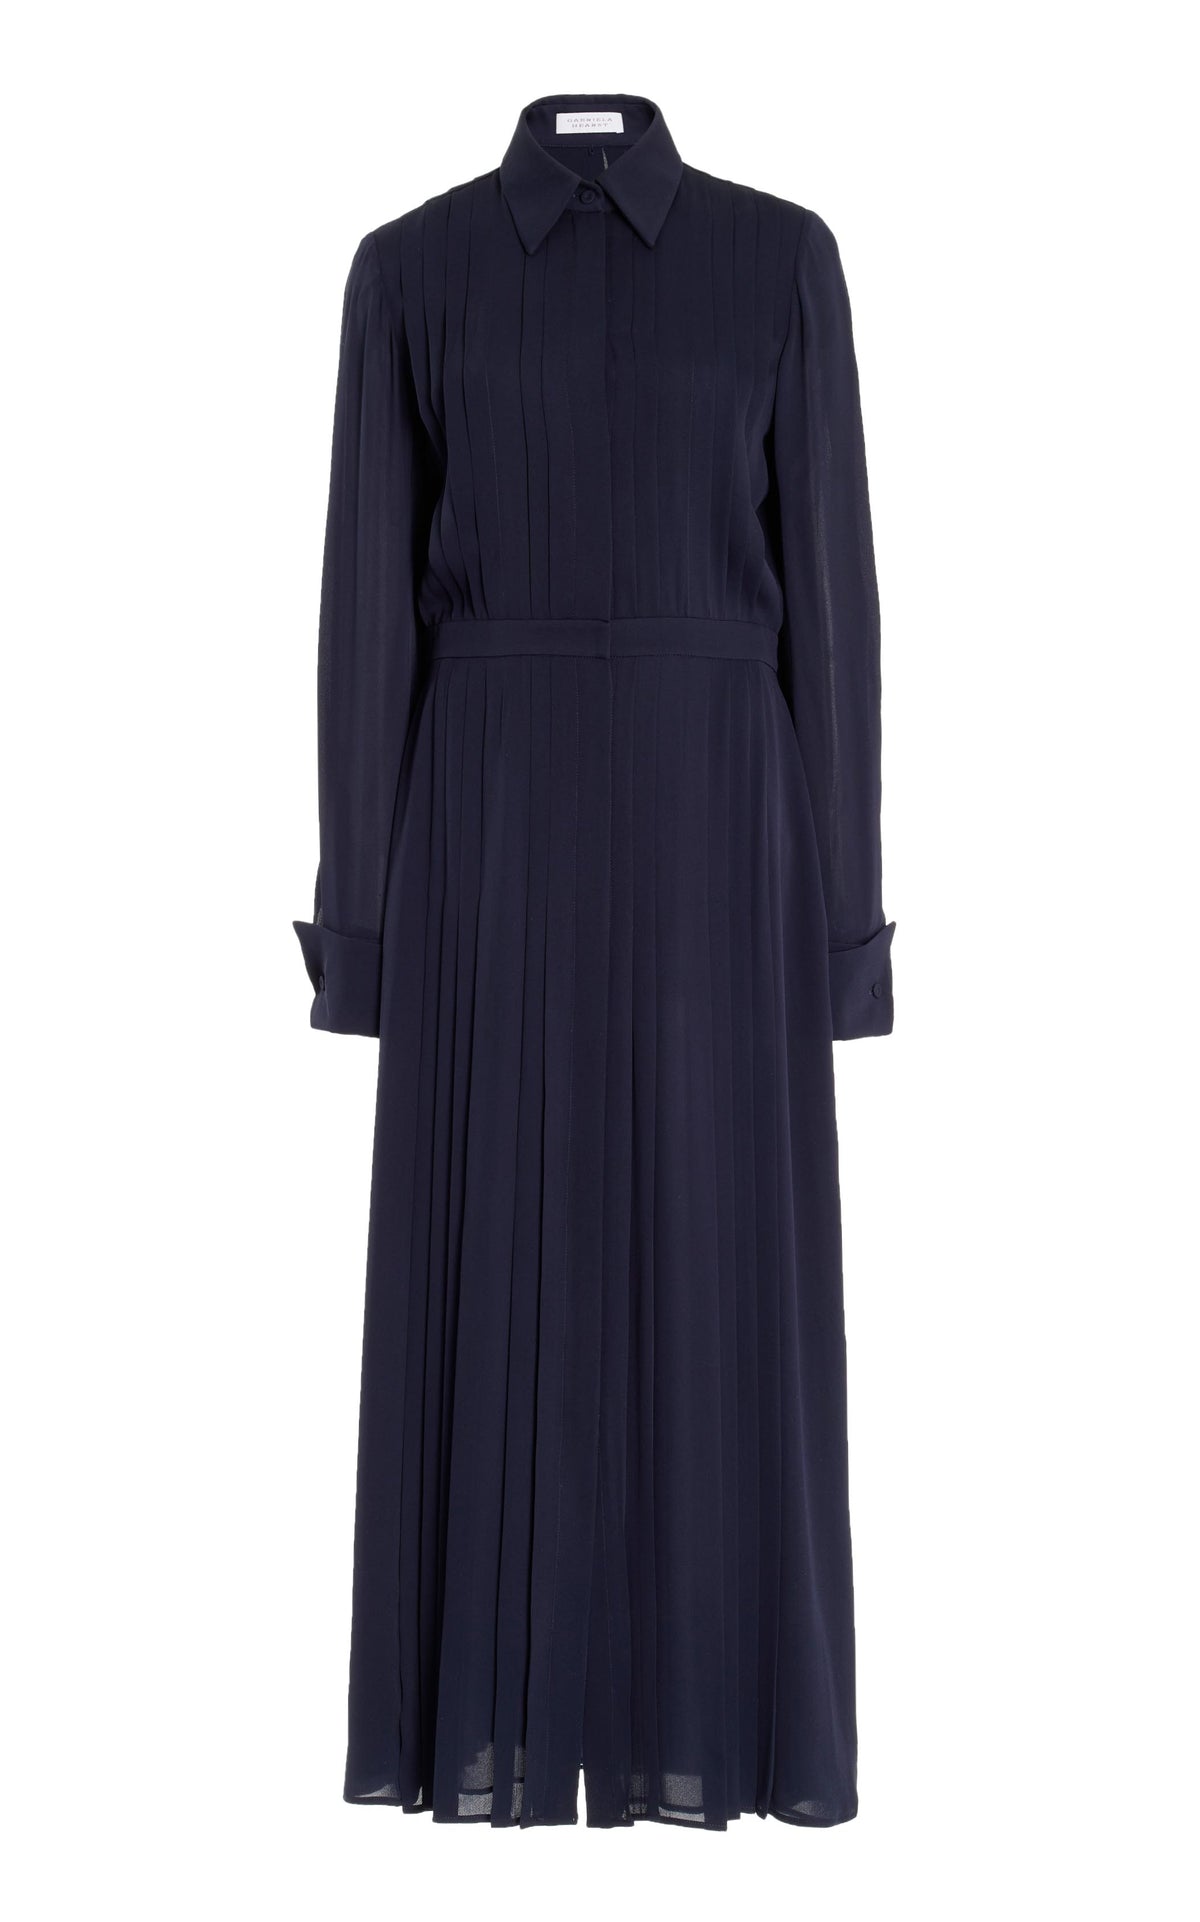 Delphine Dress in Dark Navy Silk Georgette Twill